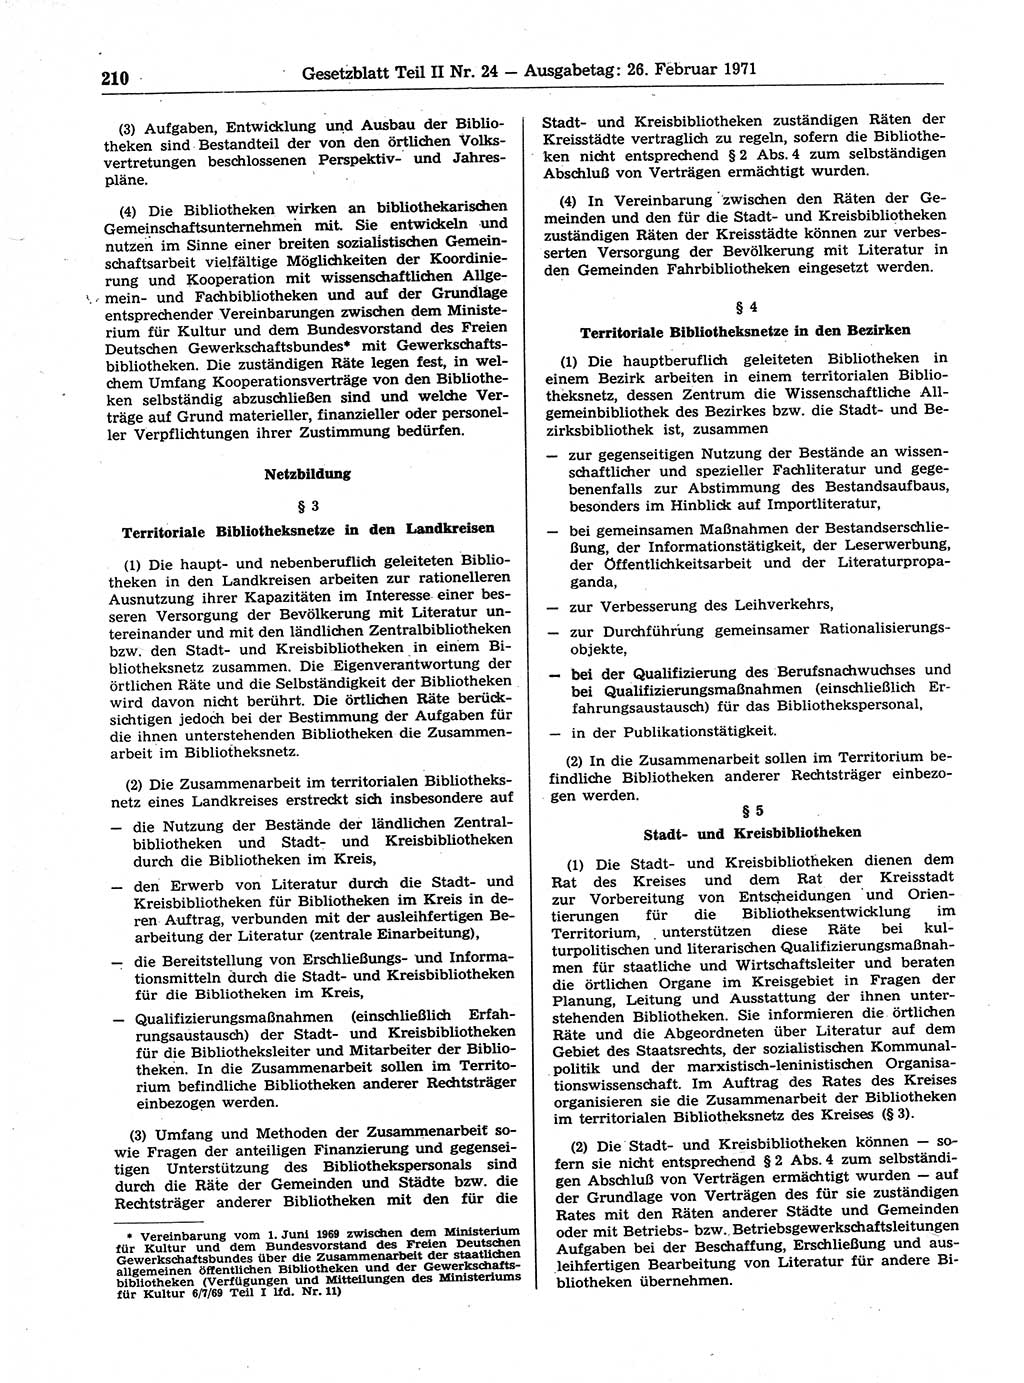 Gesetzblatt (GBl.) der Deutschen Demokratischen Republik (DDR) Teil ⅠⅠ 1971, Seite 210 (GBl. DDR ⅠⅠ 1971, S. 210)